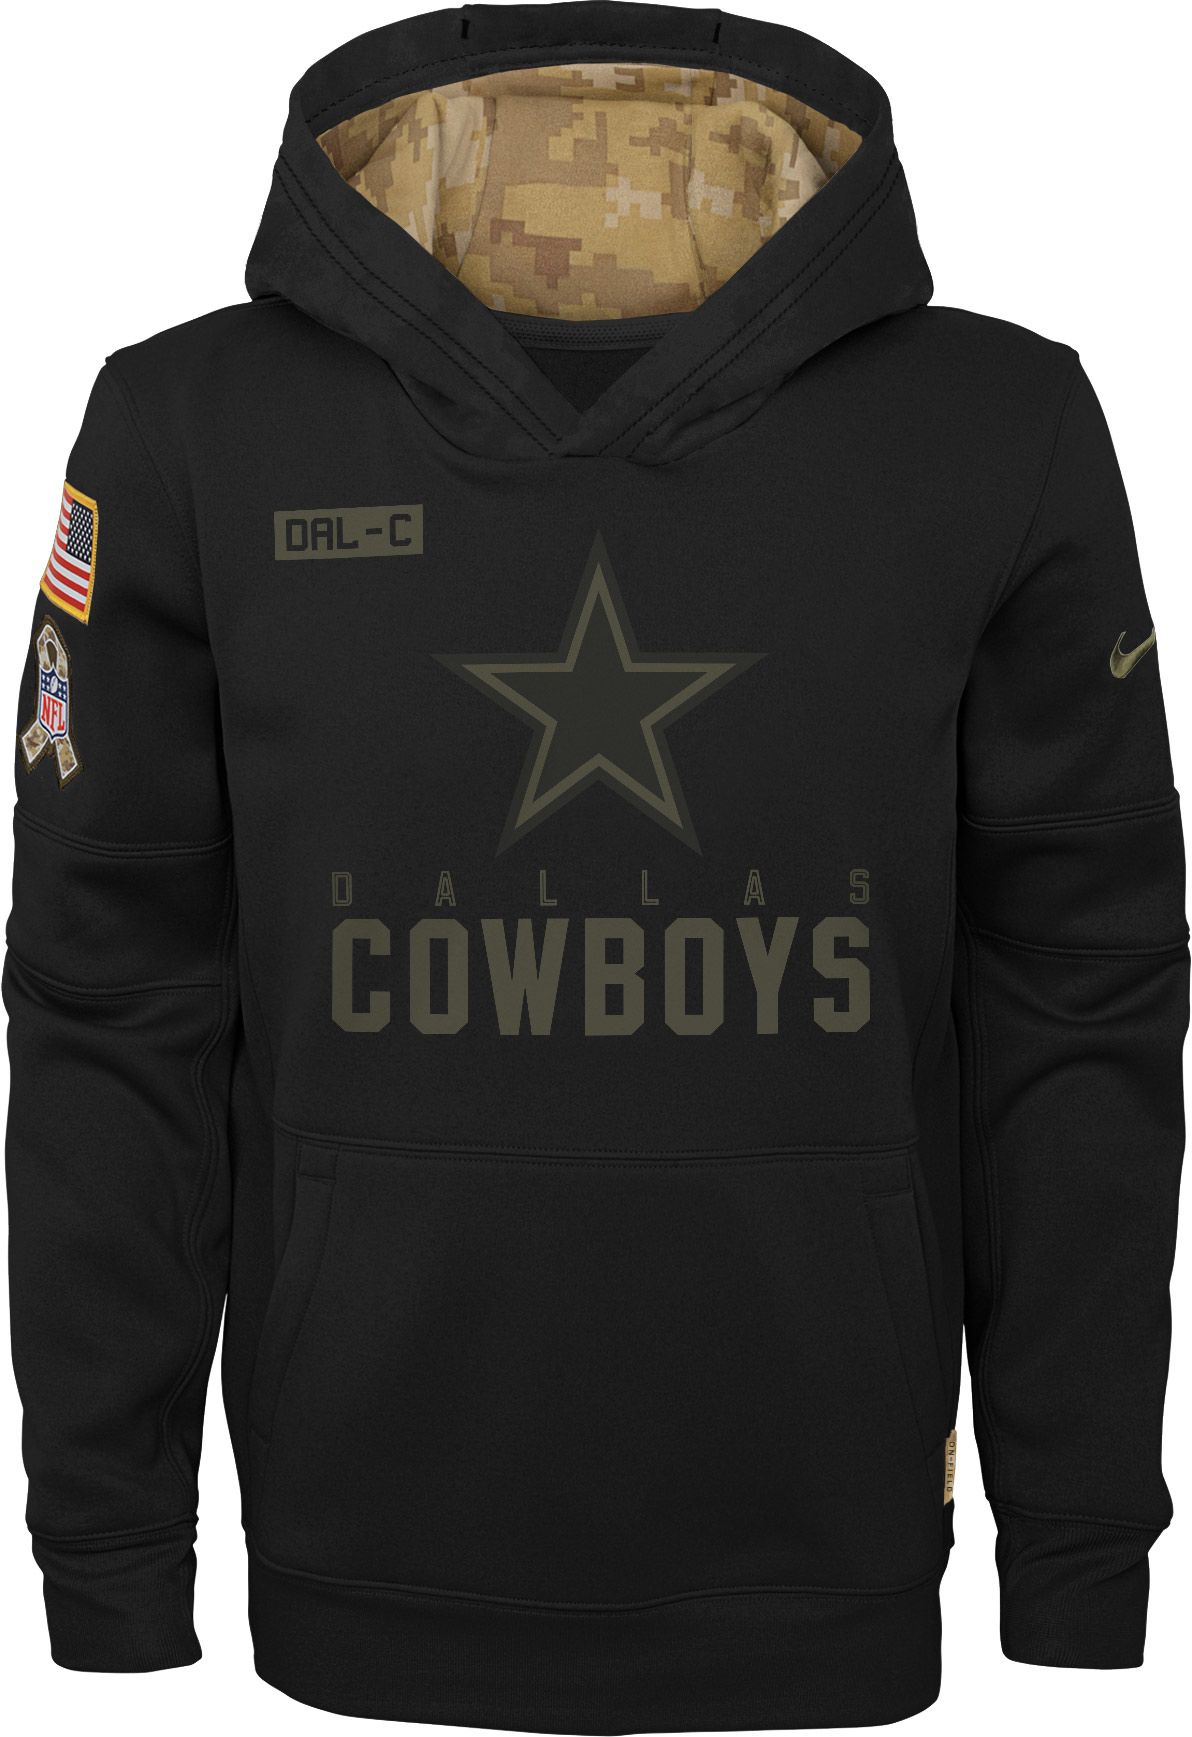 cowboys service hoodie